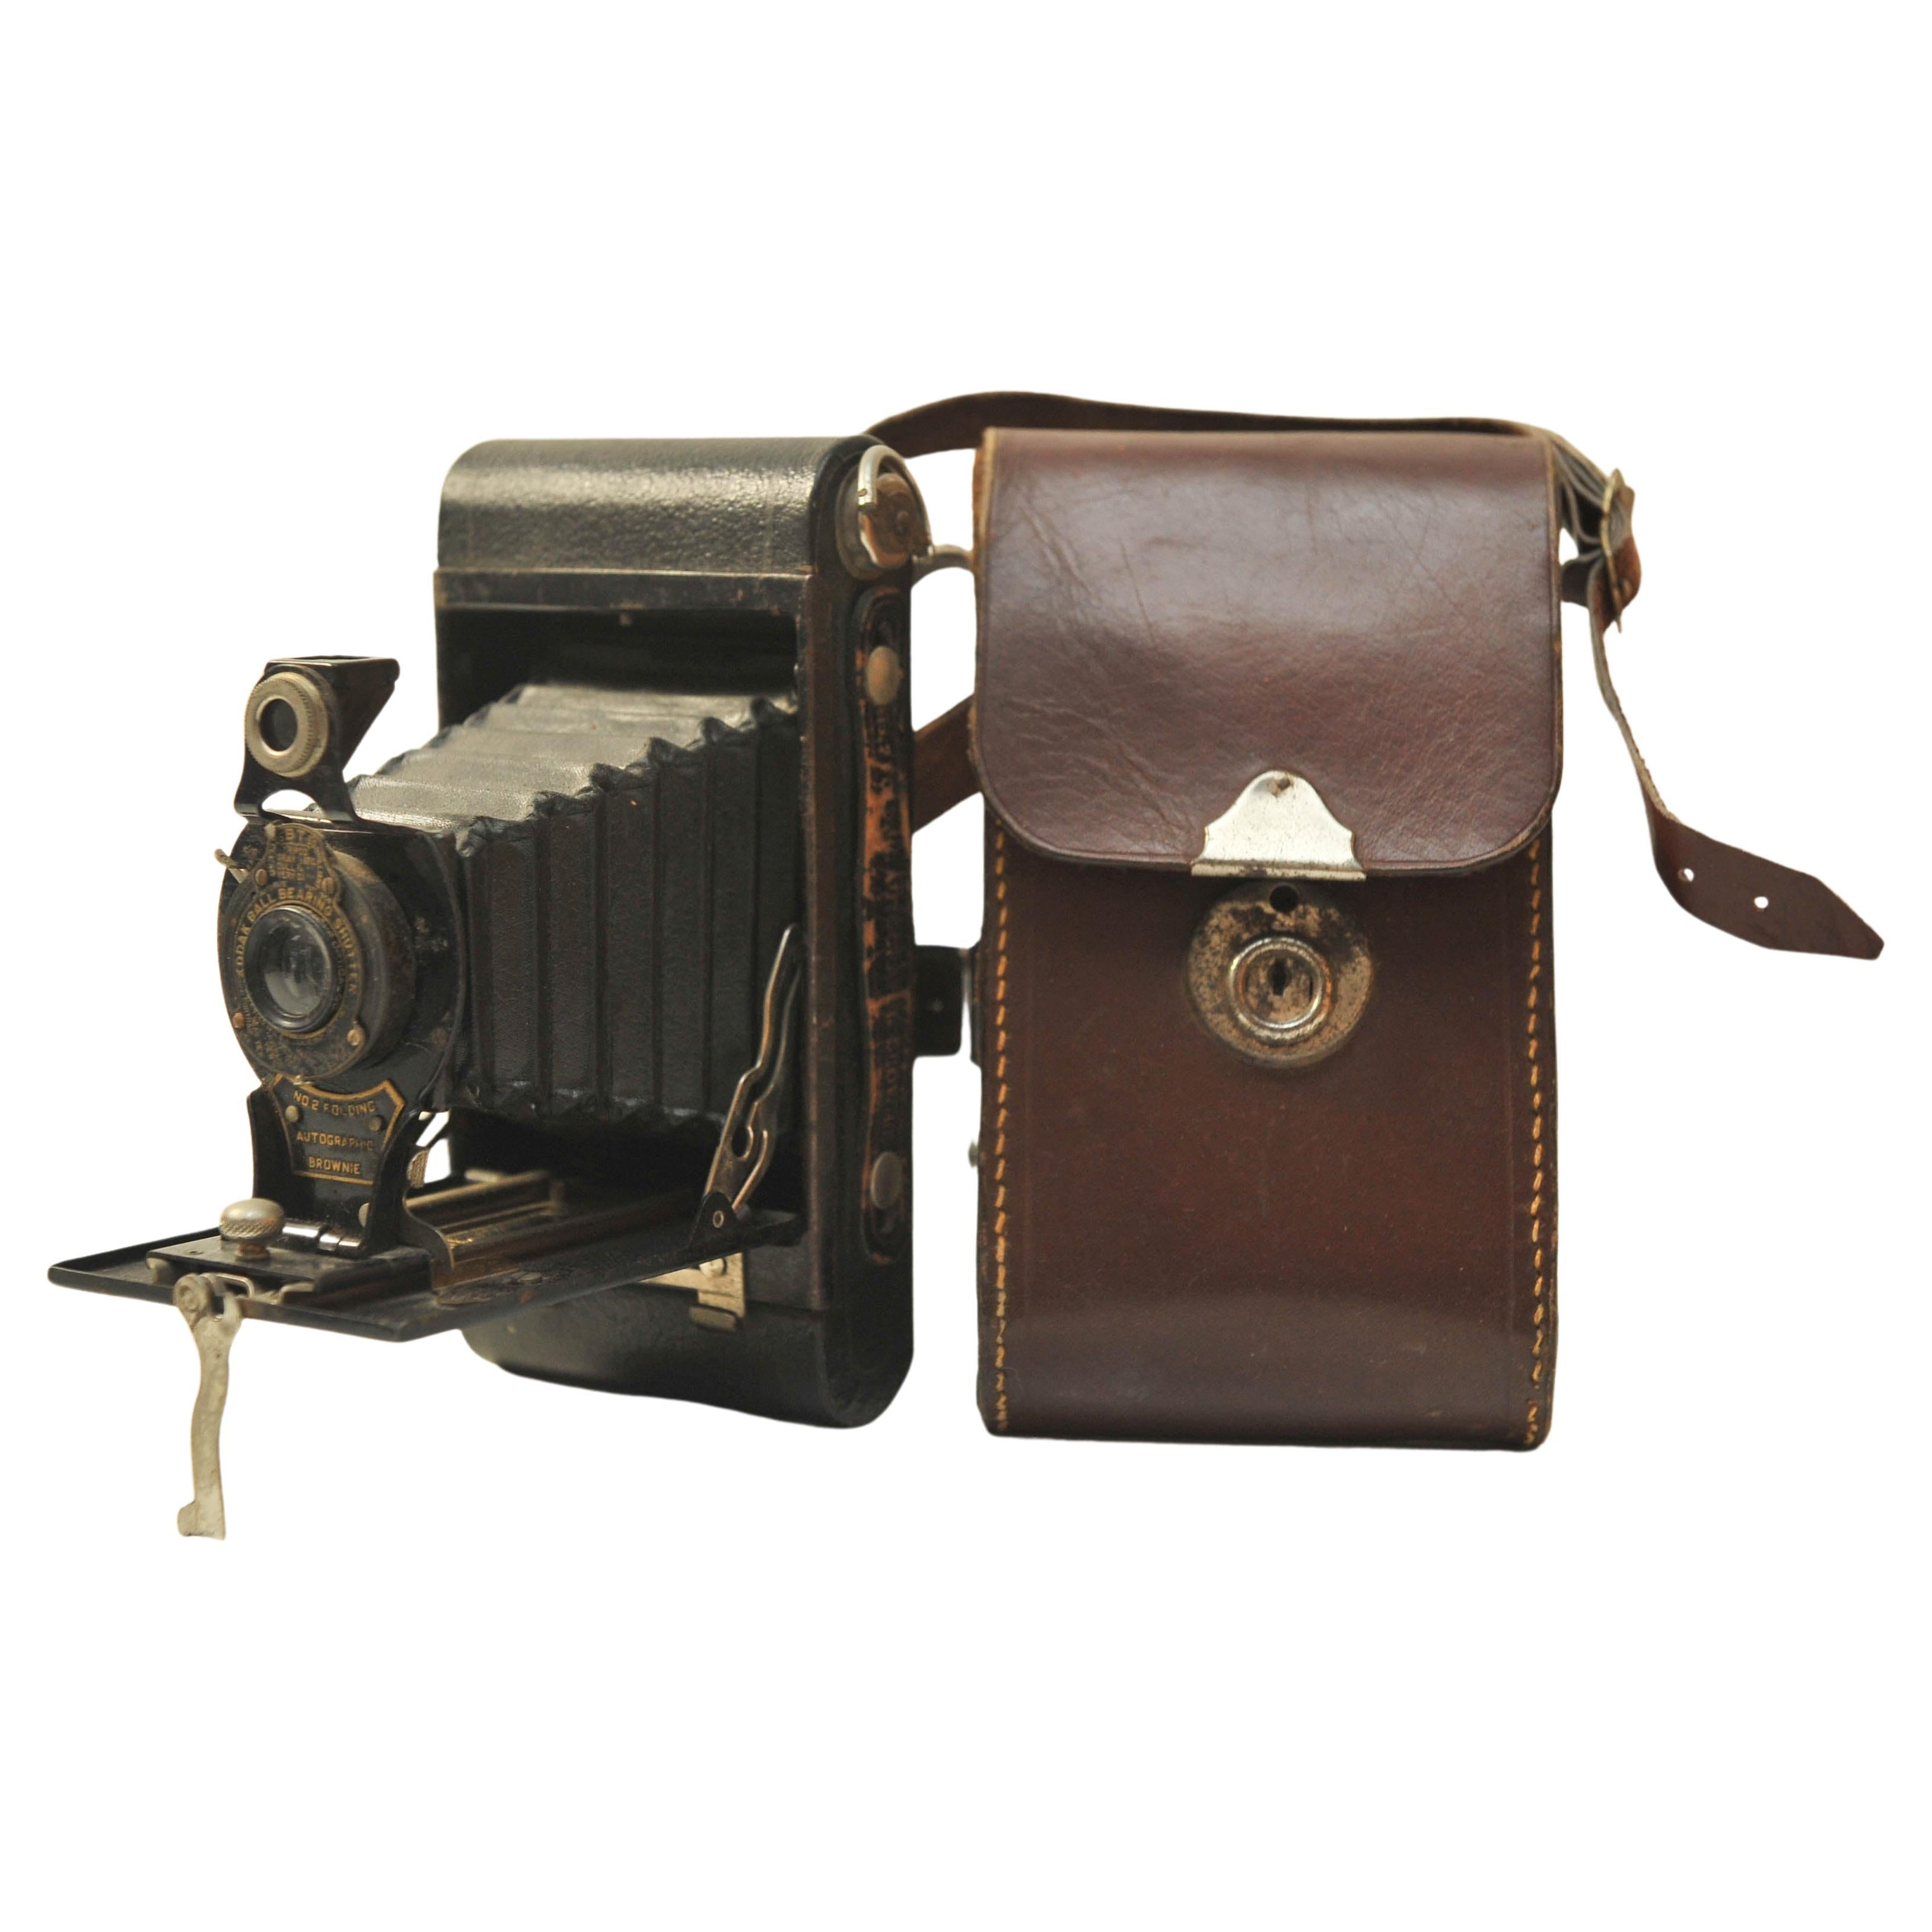 Eastman Kodak Co Nr. 1 Pocket Kodak Jr. 120 Roll Film Folding Below Kamera mit 112mm F6.3 Anastigmat Objektiv 

Hergestellt zwischen 1910-19

Nummer 36241, mit kugelgelagertem Verschluß

Hergestellt in Rochester, NY

No.1 Autographic Kodak Jr. ist